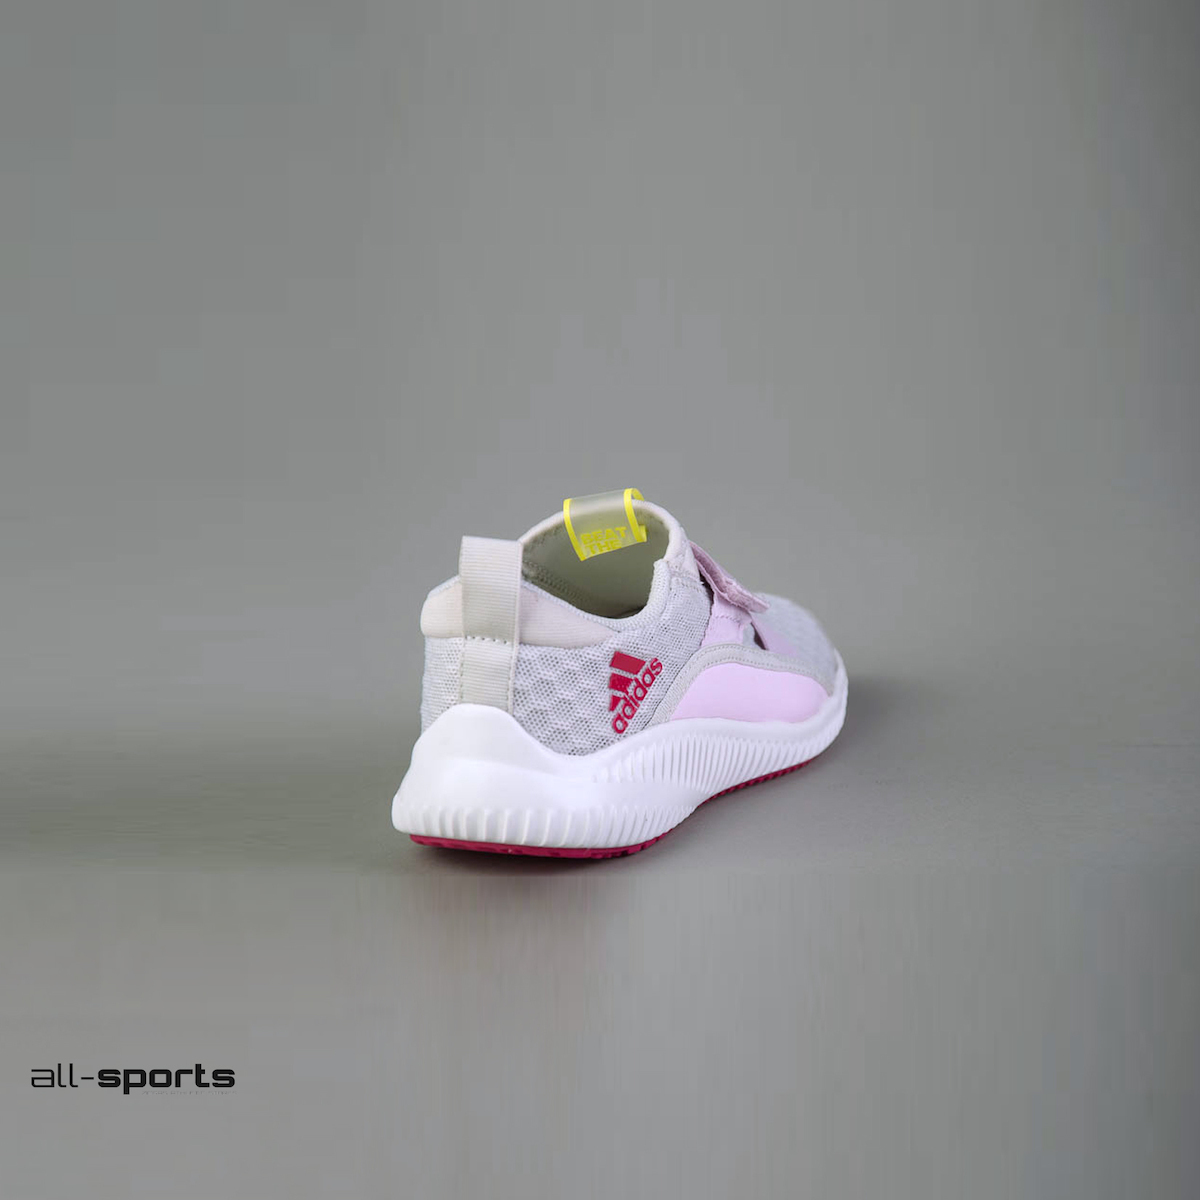 bordado Goteo Infantil Adidas Αθλητικά Παιδικά Παπούτσια Running Fortarun X με Σκρατς Γκρι CP9432  | Skroutz.gr